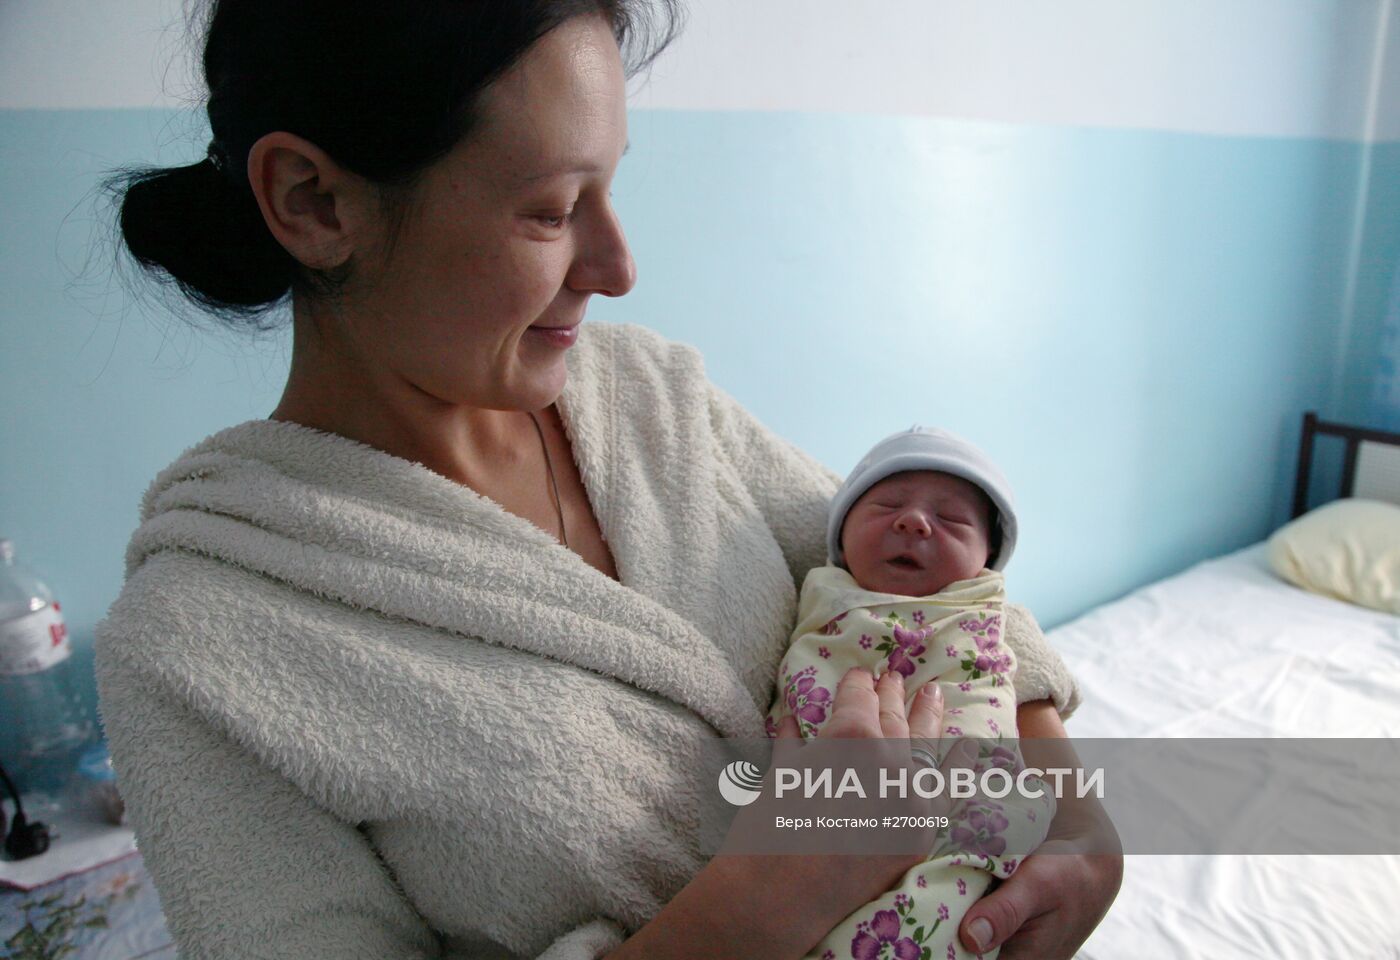 Территориальное медицинское объединение "Семья и здоровье" в Донецкой области